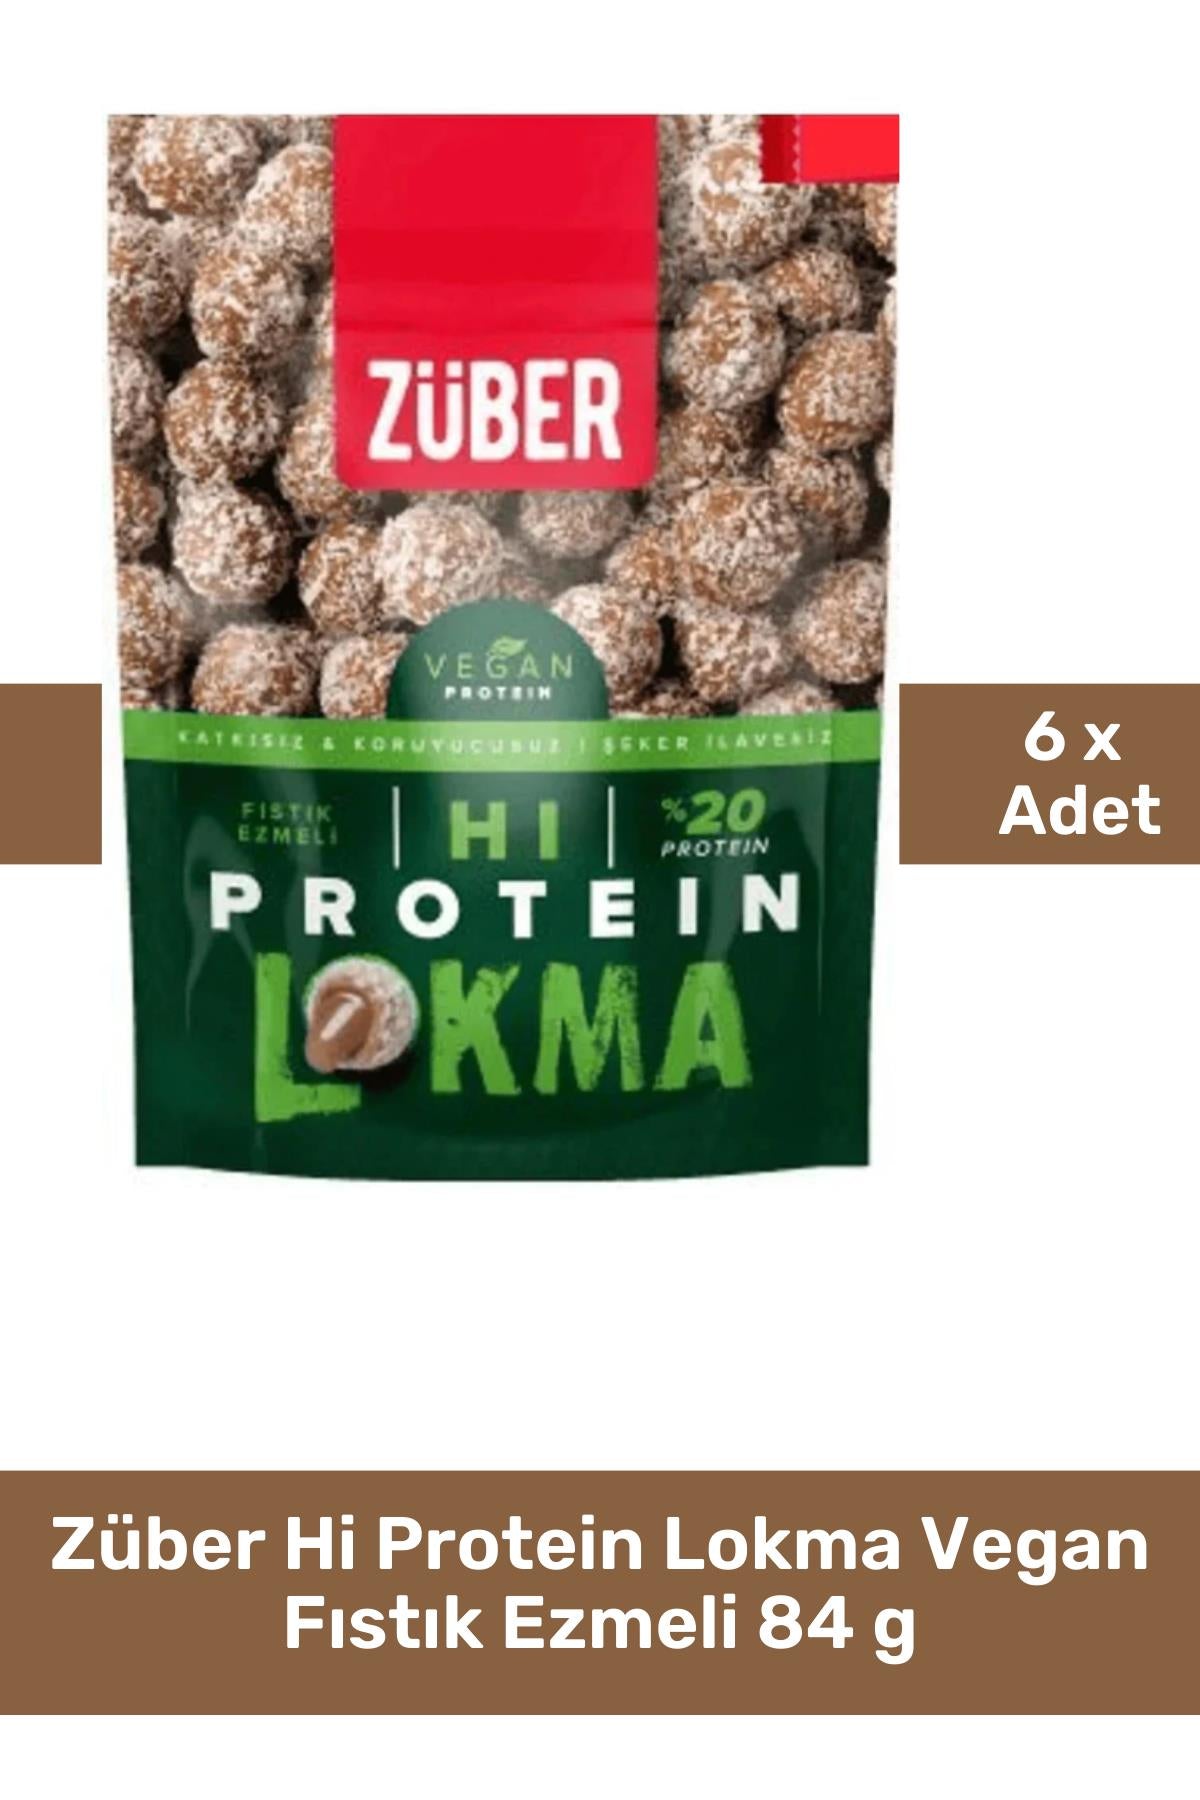 Züber Hi Protein Lokma Vegan Fıstık Ezmeli 84 g 6'lı Paket